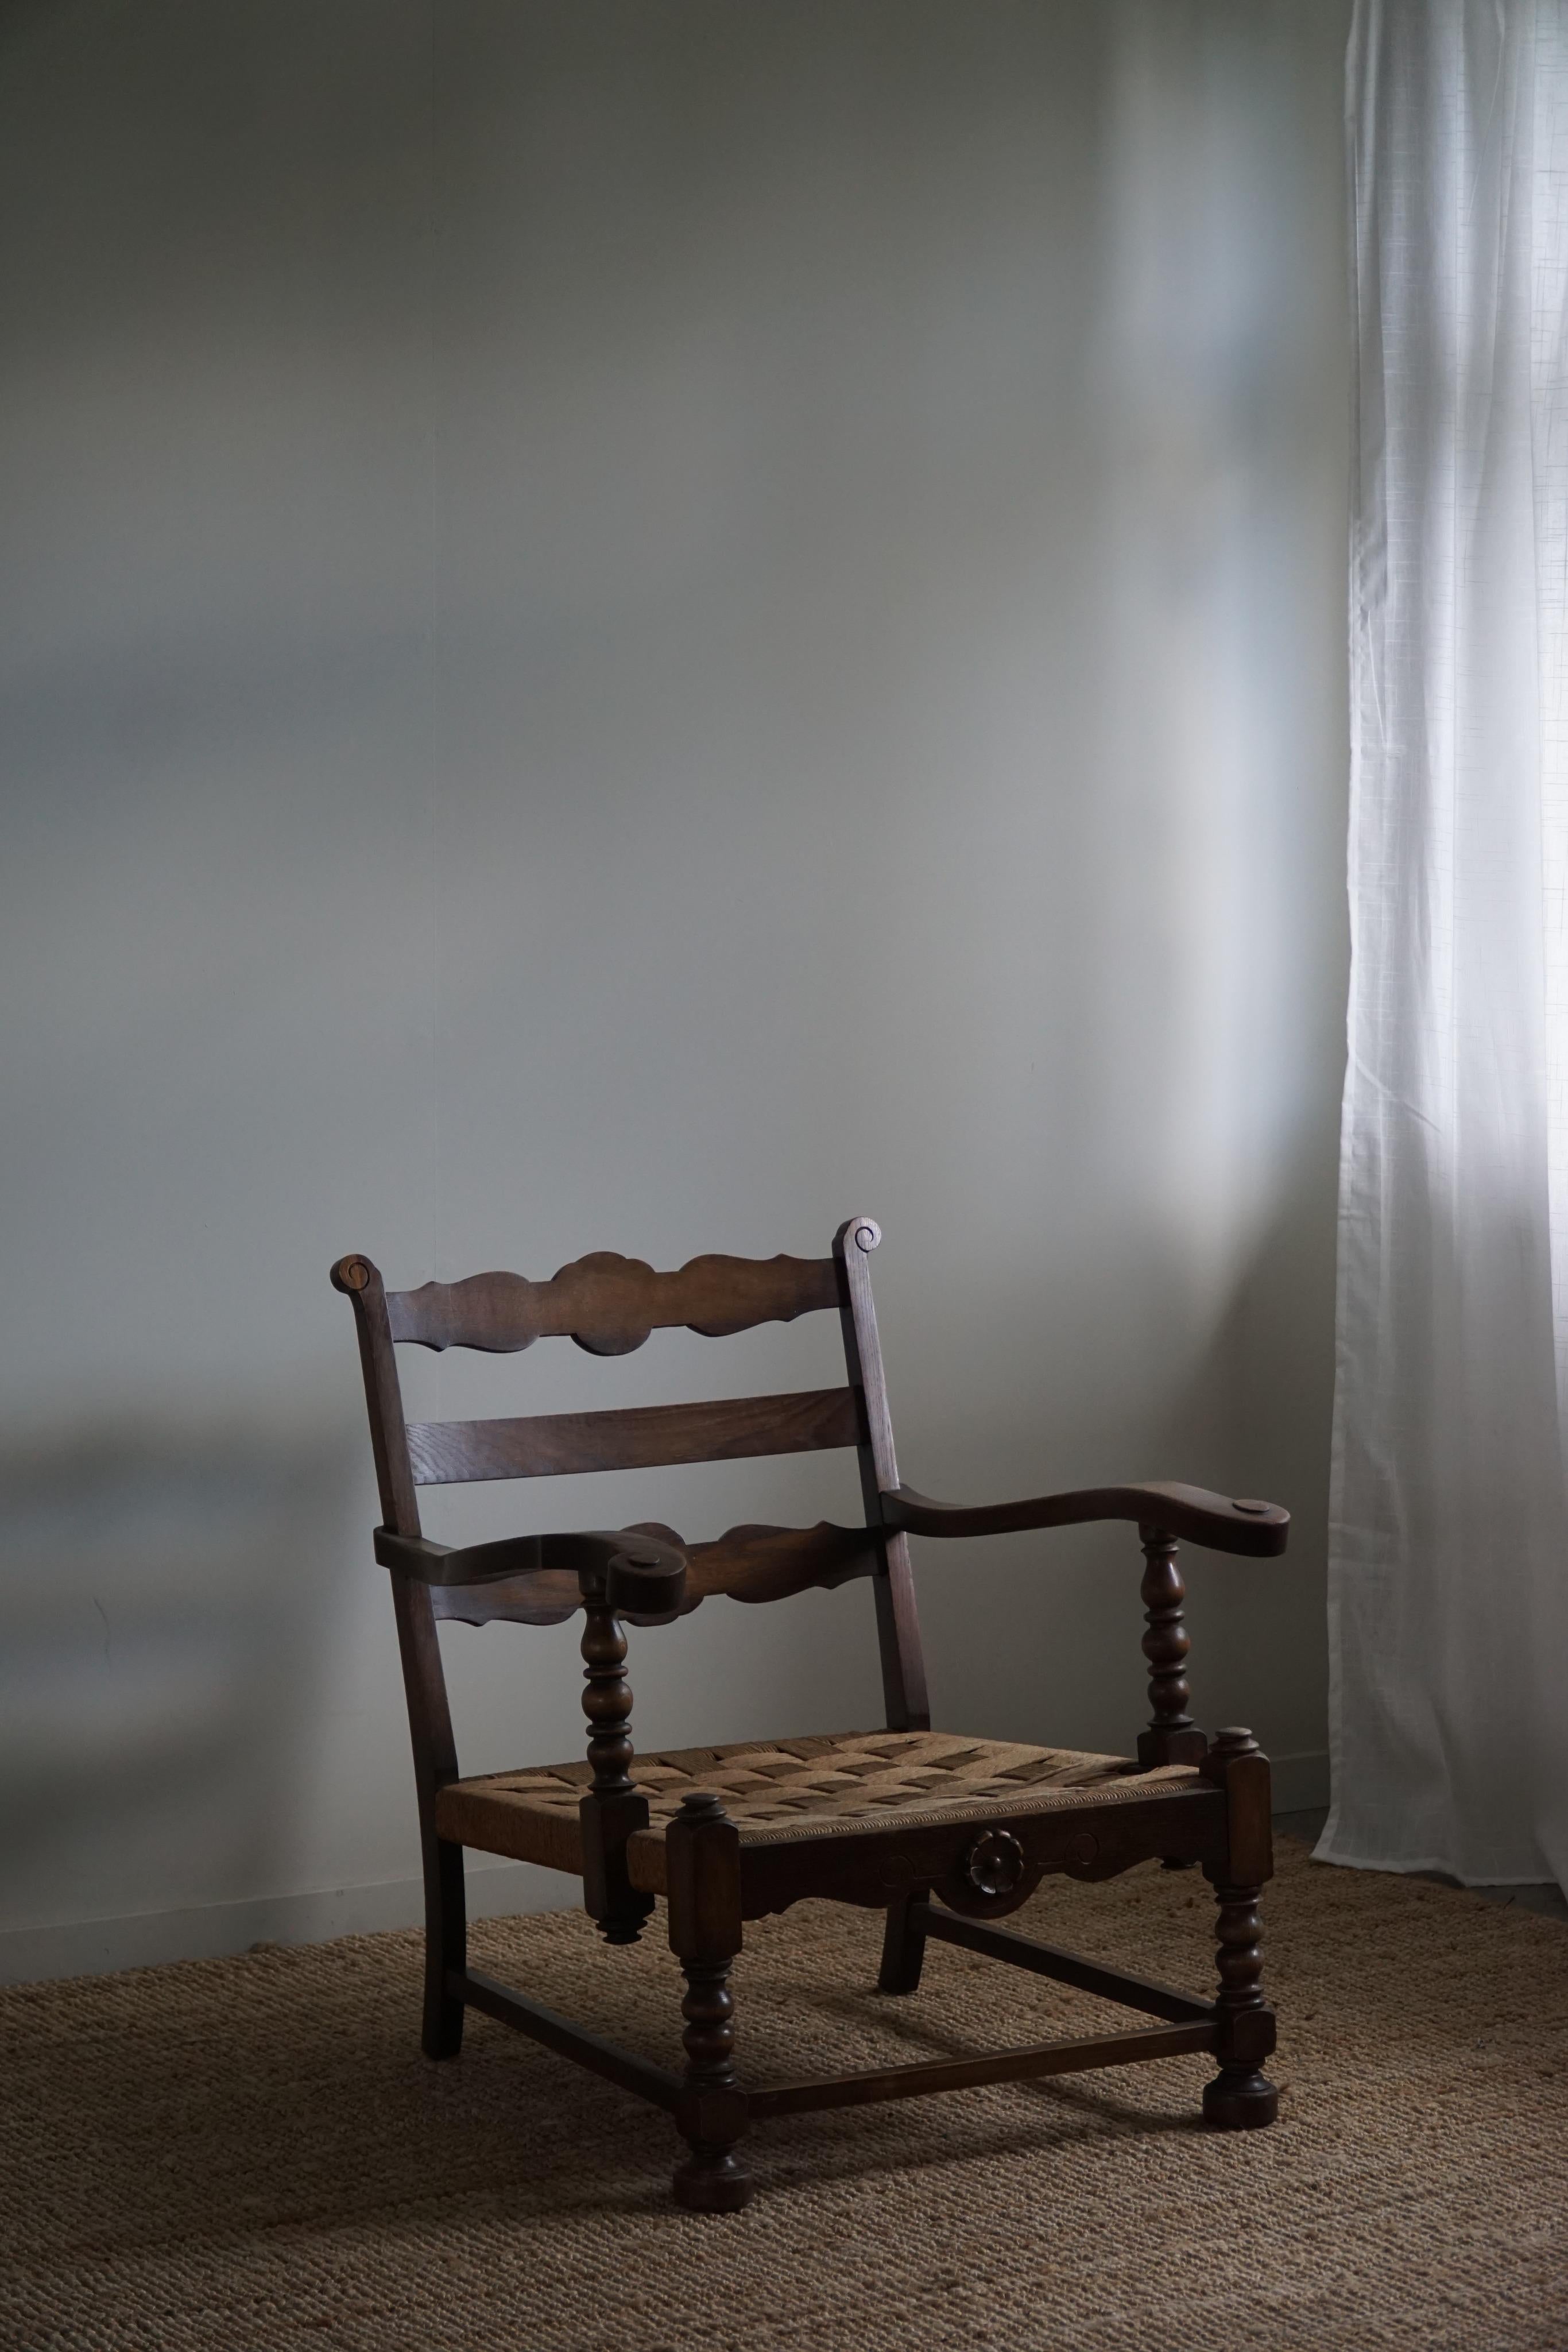 Ein skulpturales Paar Sessel / Lounge Chair aus Eiche und handgeflochtenem Papierkordelsitz. Hergestellt von einem dänischen Tischler in den 1940er Jahren. Eine dekorative Figur für das moderne Interieur. Diese Sessel haben eine sehr starke